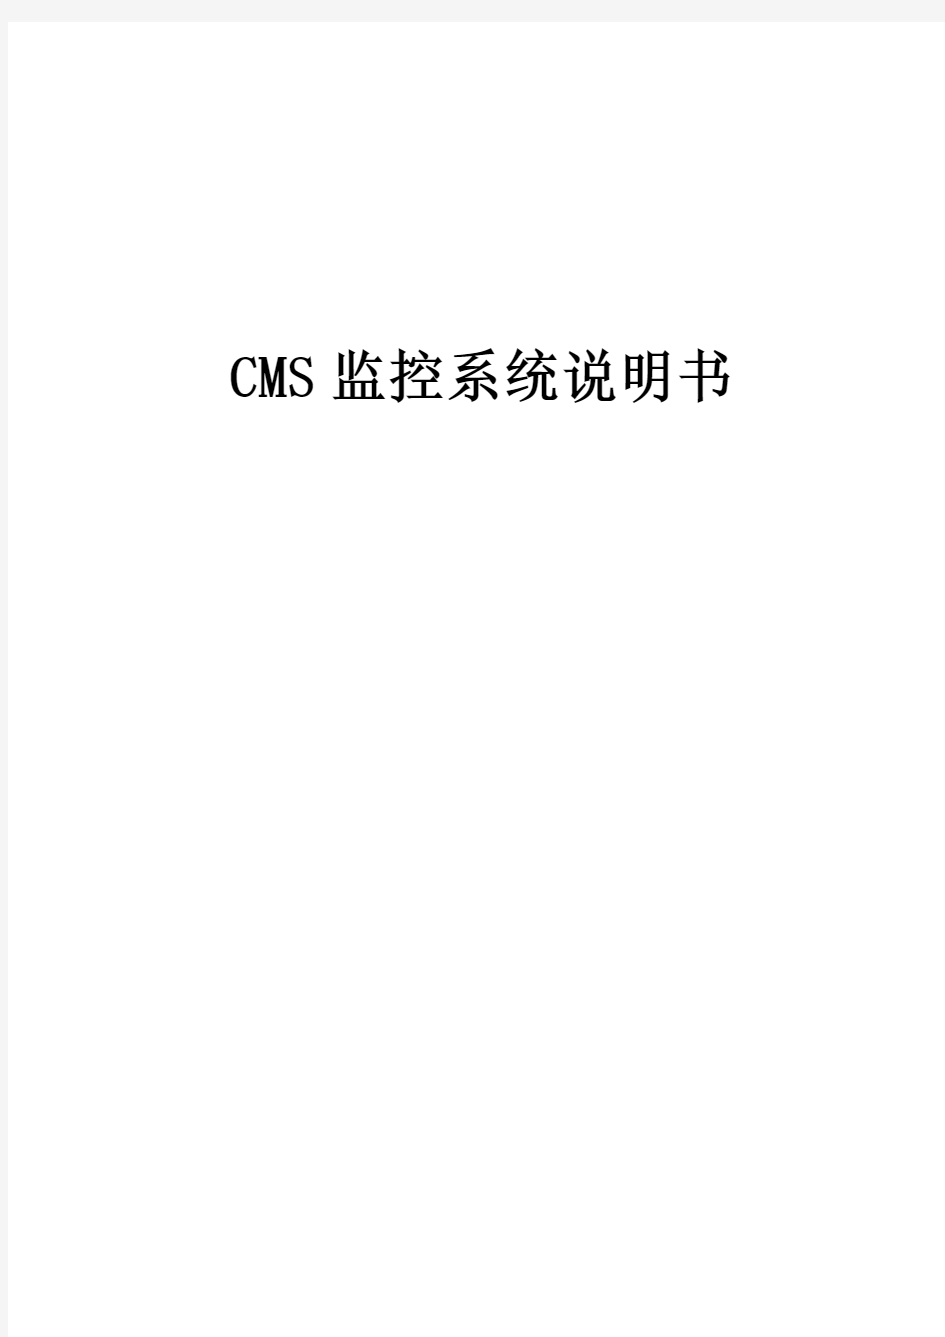 CMS监控系统说明书中文